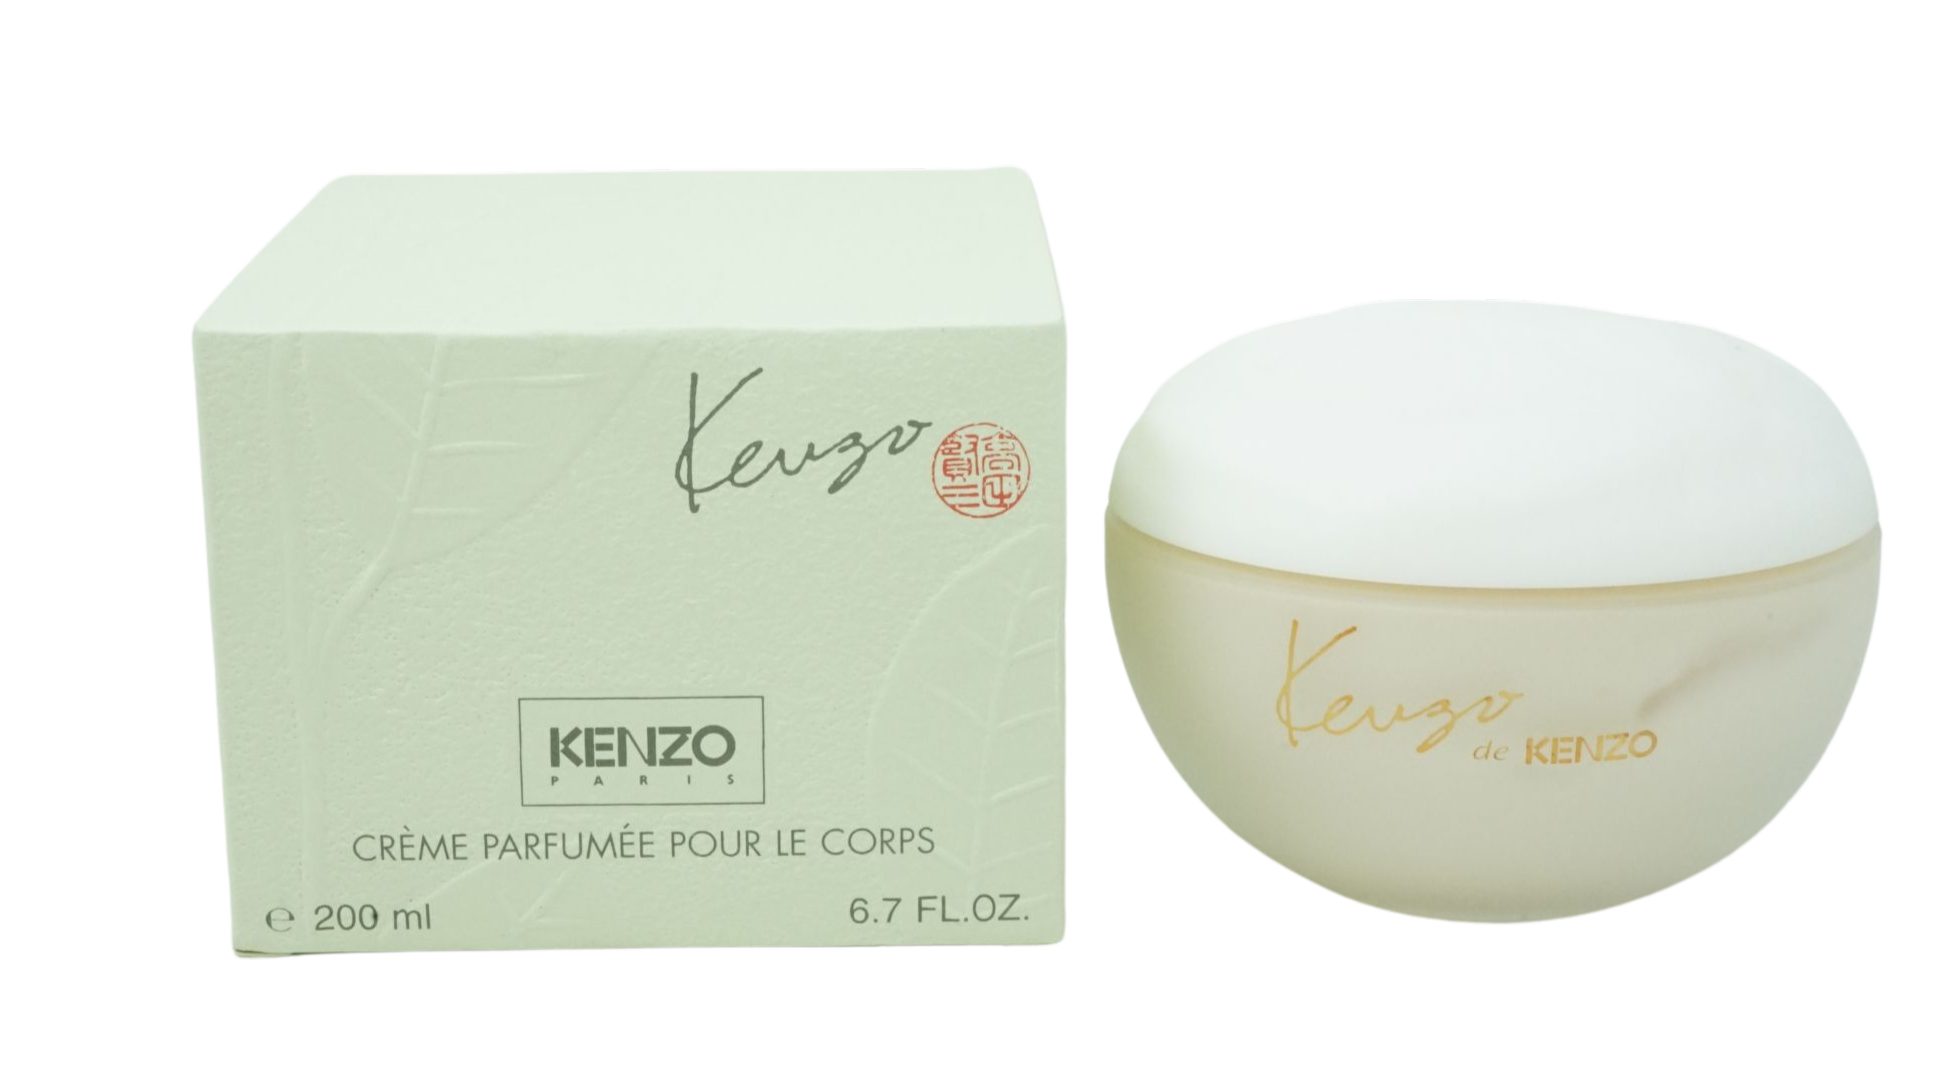 Paris Body Parfum de Kenzo Cream 200ml Eau KENZO Parfumed